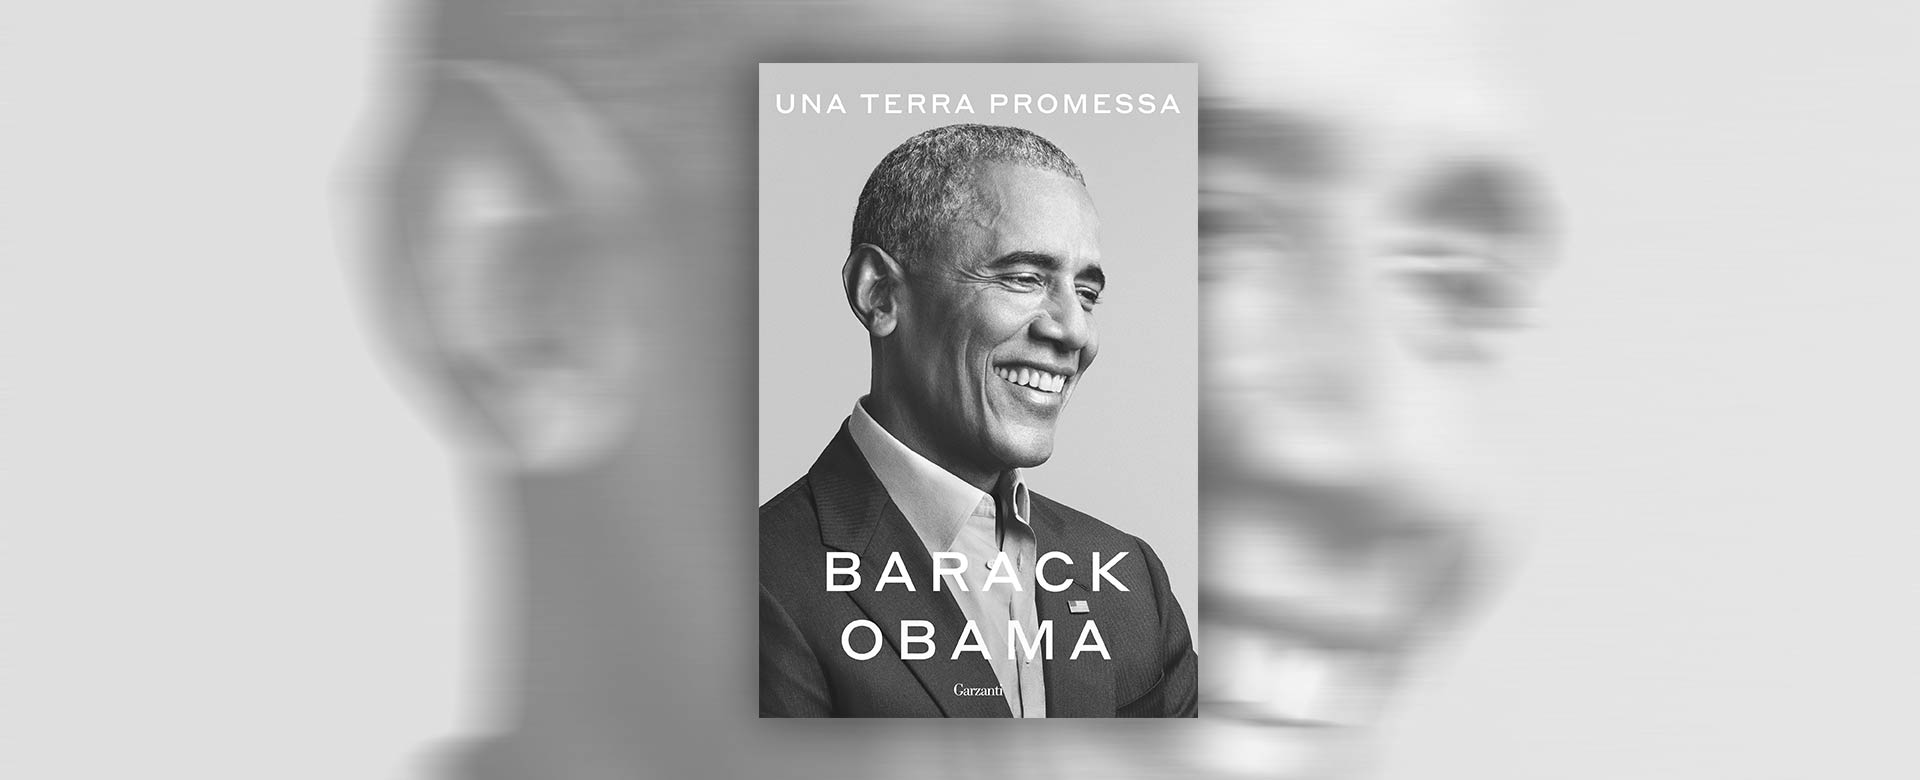 Immagine del libro Una terra promessa di Barack Obama